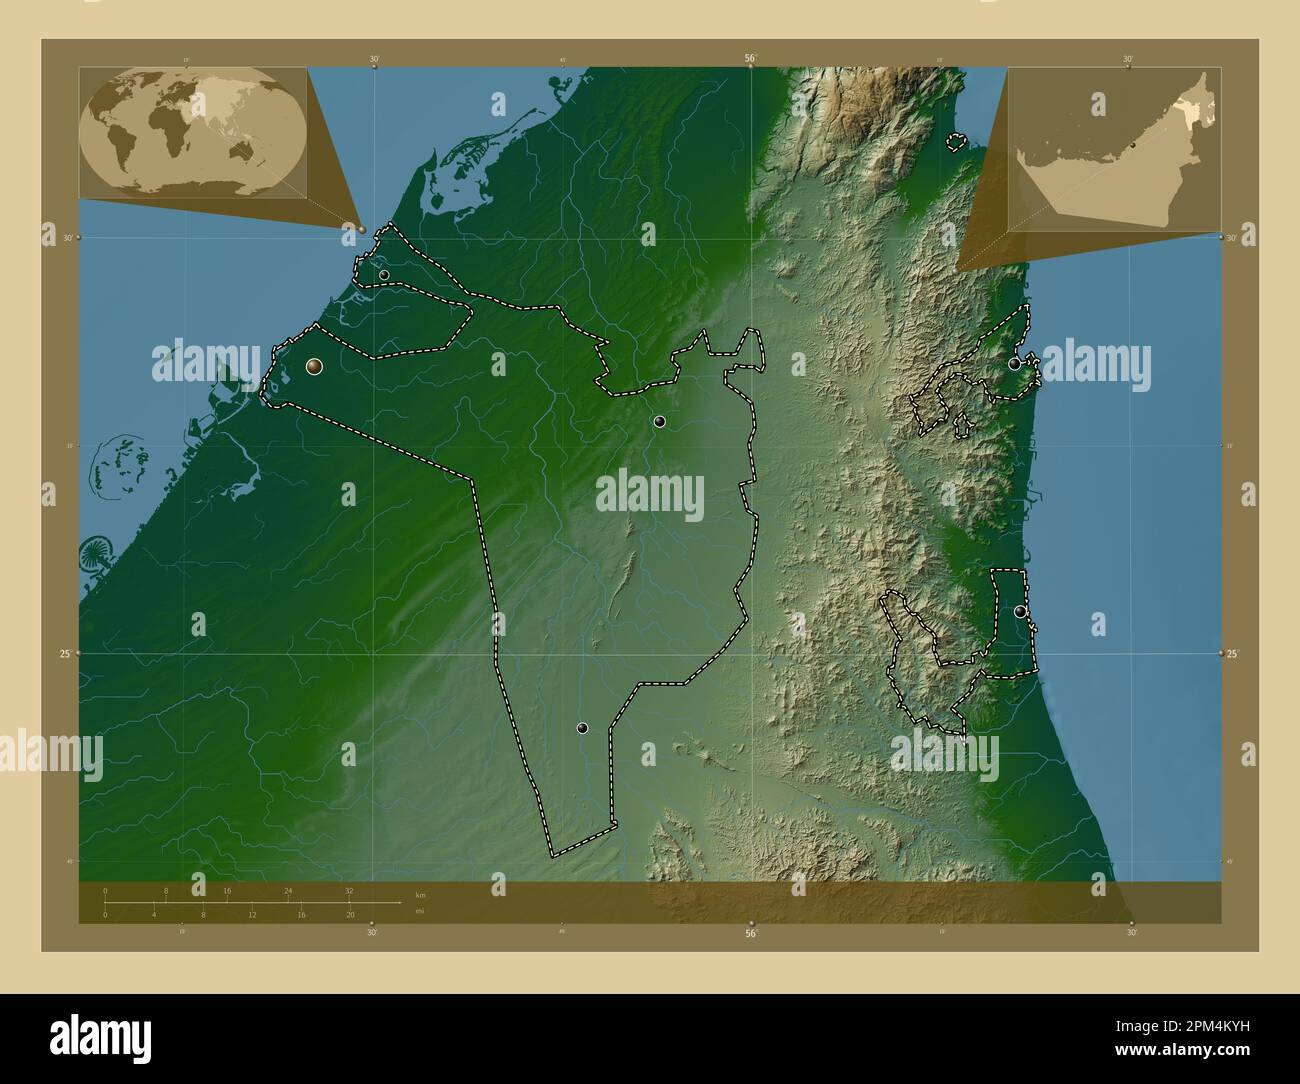 Sharjah, émirat des Émirats arabes Unis. Carte d'altitude en couleur avec lacs et rivières. Lieux des principales villes de la région. Emplacement auxiliaire d'angle Banque D'Images